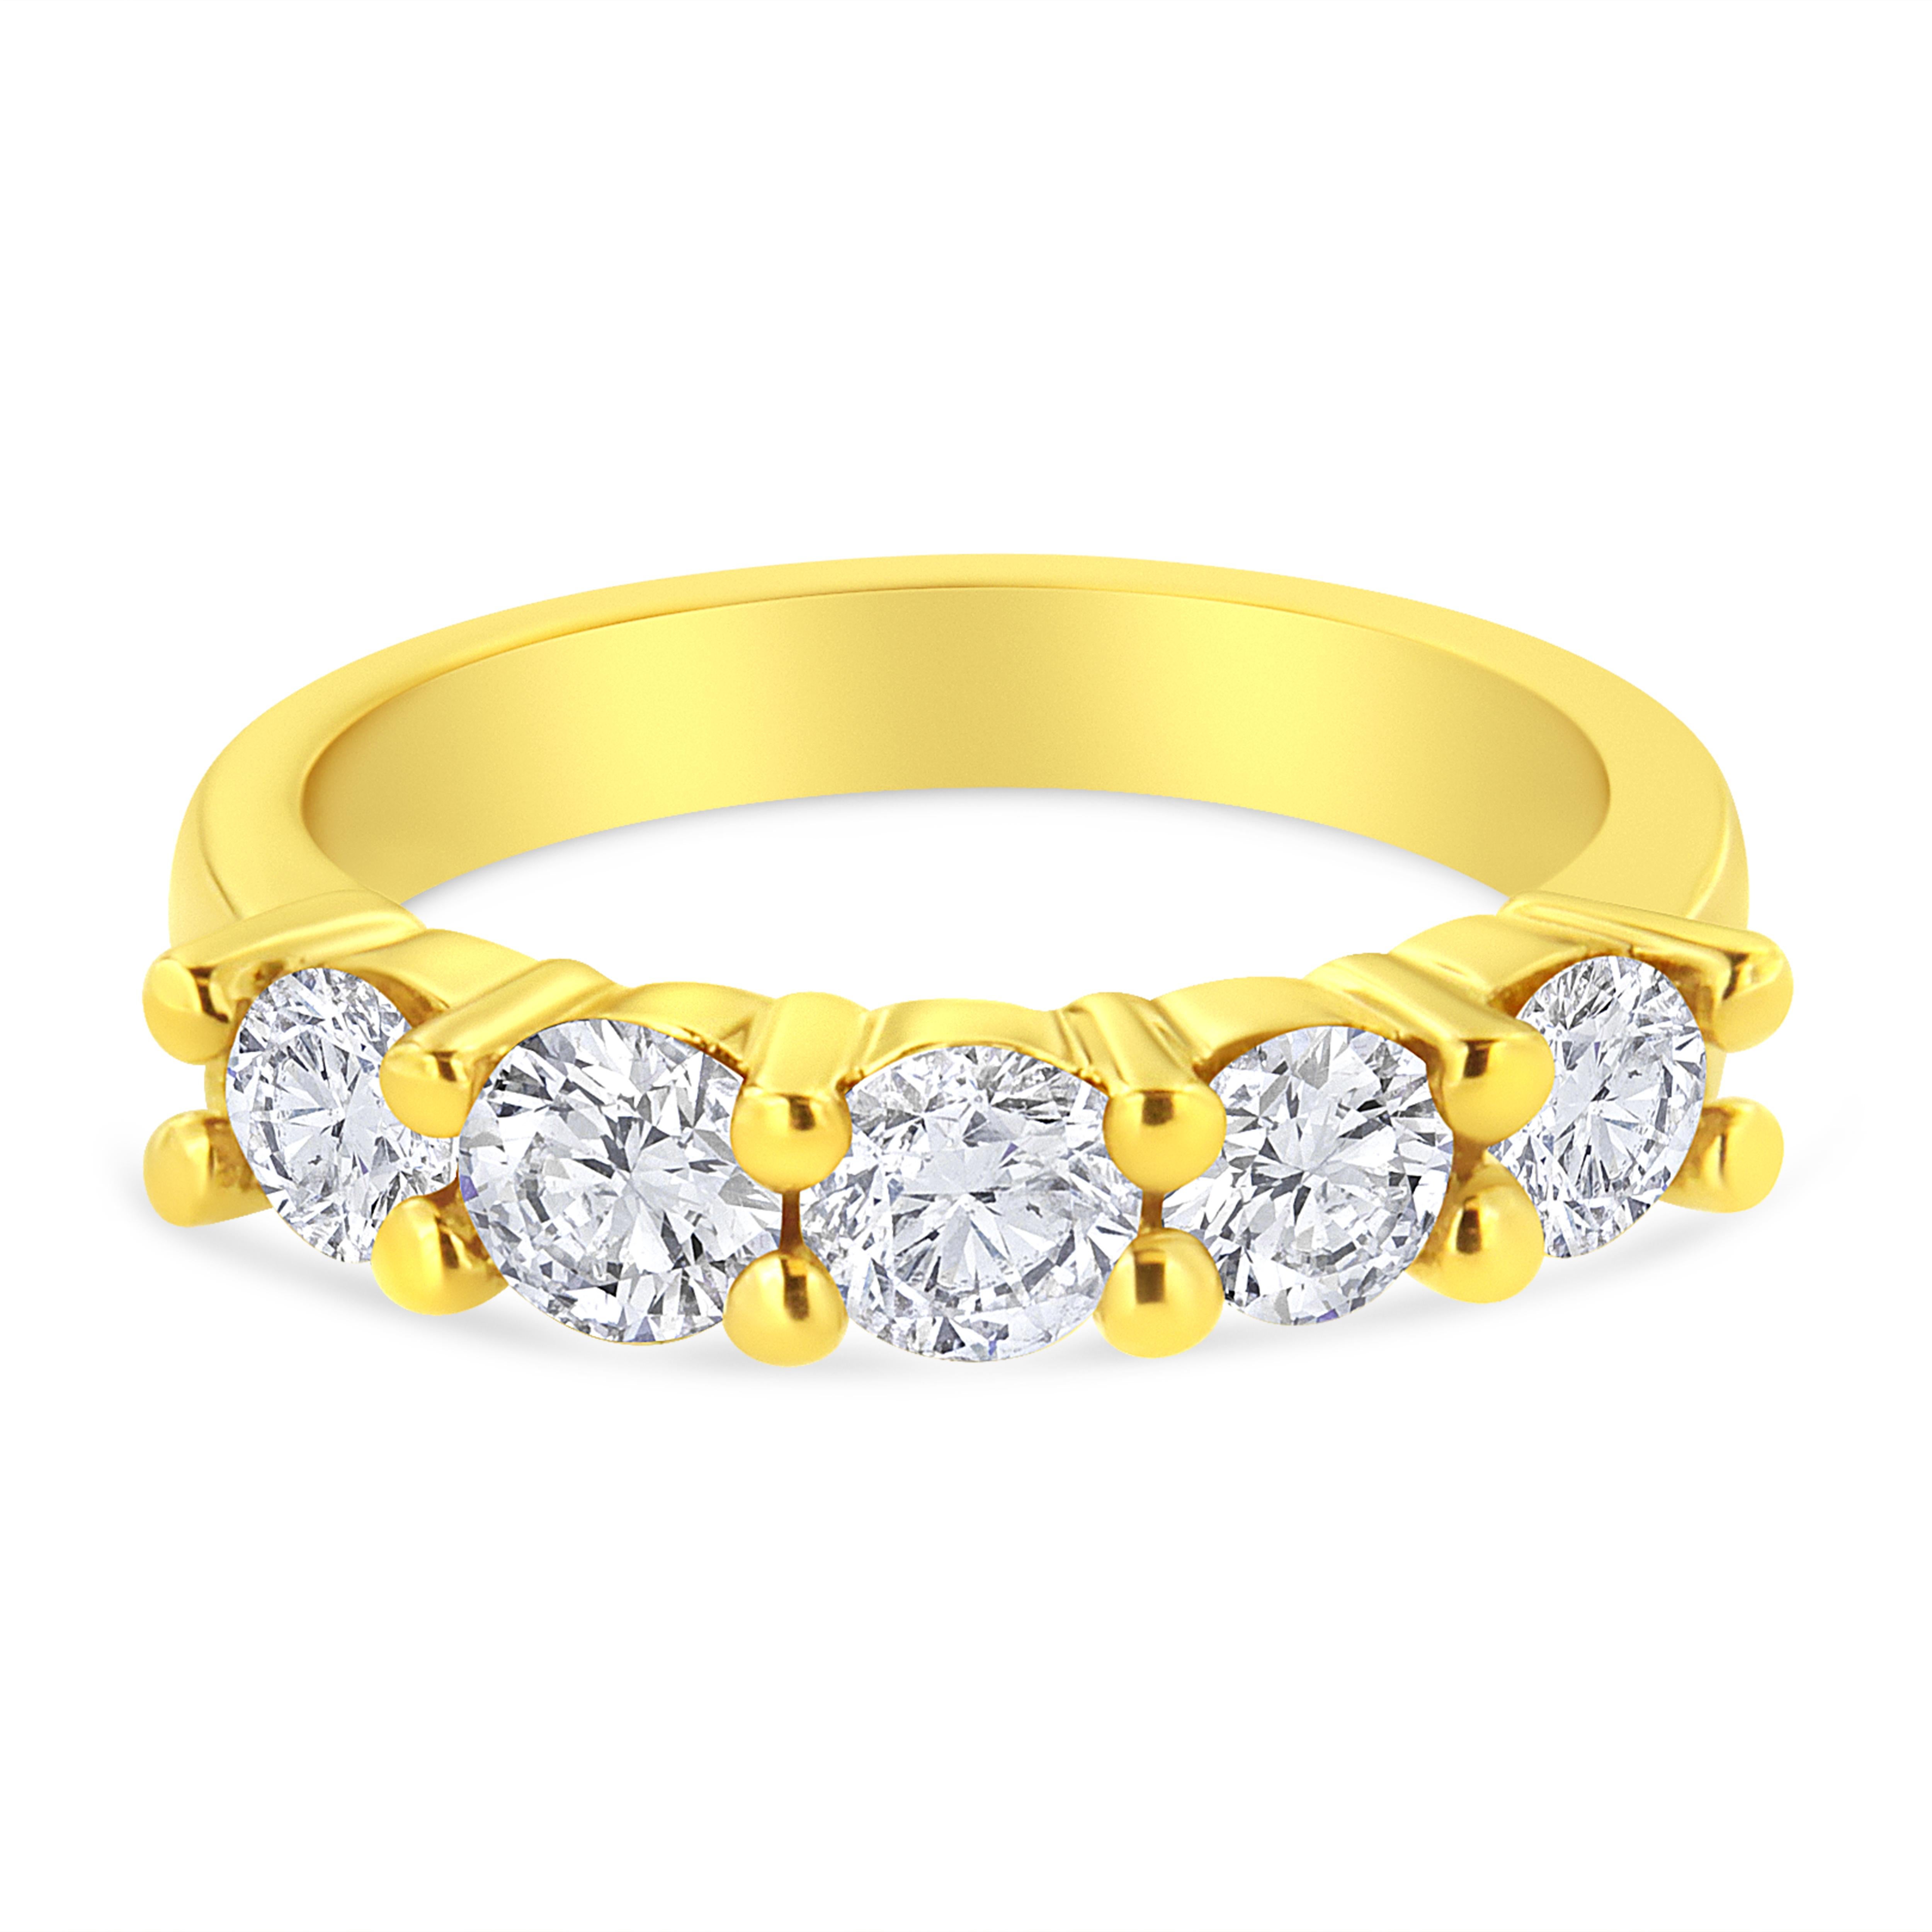 Dieser klassische und elegante Ring aus 14-karätigem, gelbvergoldetem Sterlingsilber ist ein absolutes Must-have-Stück. 5 schillernde rund geschliffene Diamanten in einer Zackenfassung säumen die Spitze eines warmen Gelbgoldbandes. 1 1/2ct TDW von